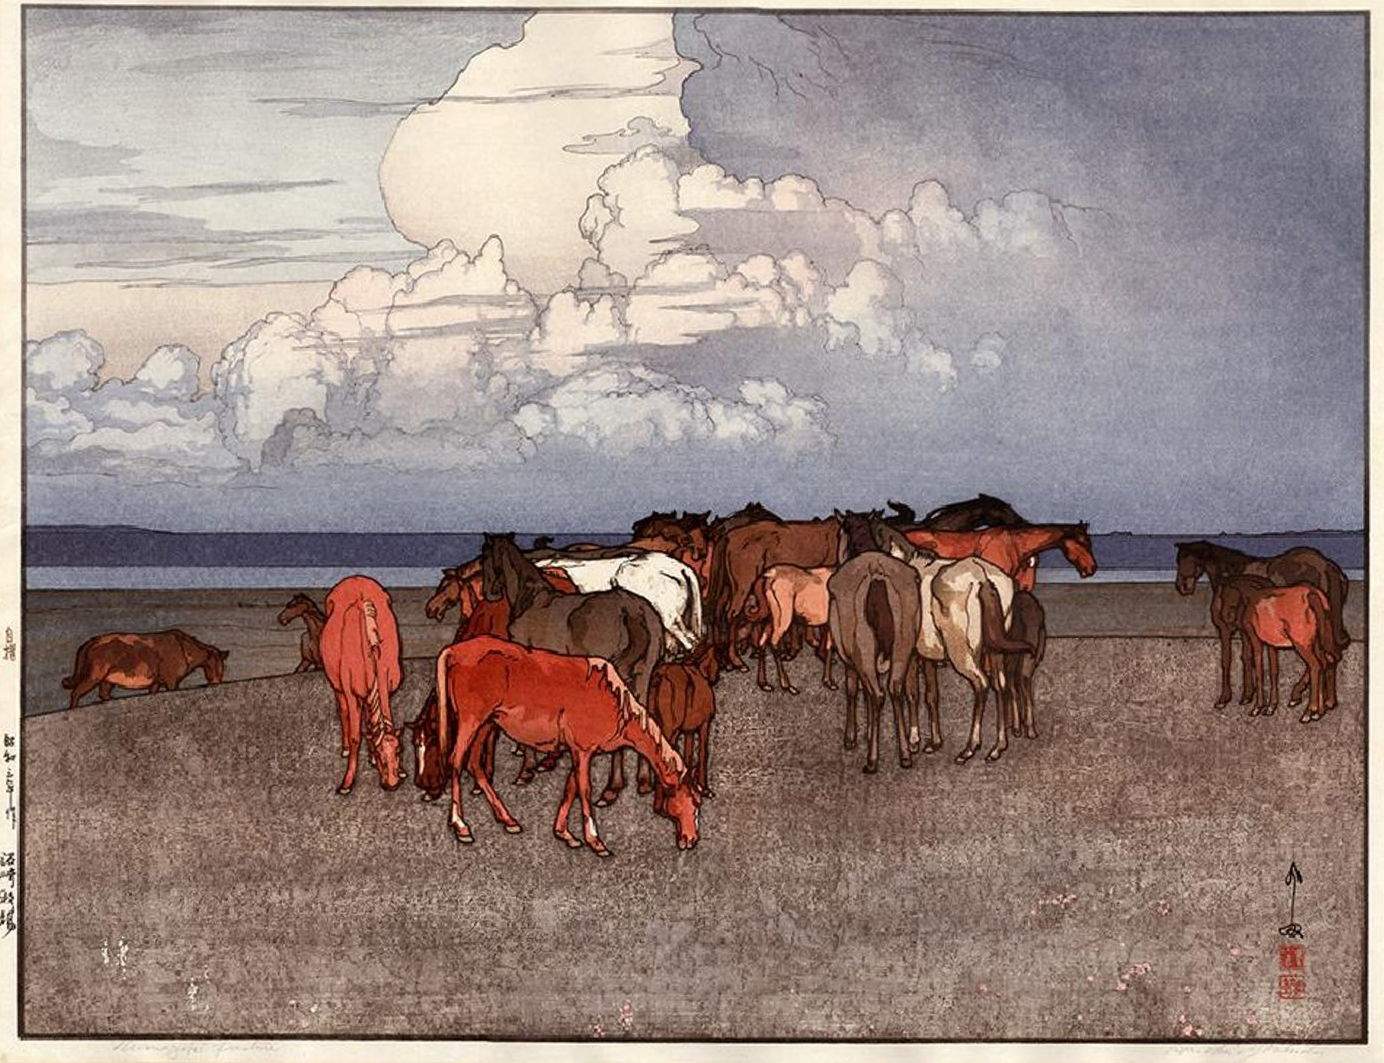 Hiroshi Yoshida “Numazaki Pasture” 1927 woodblock print